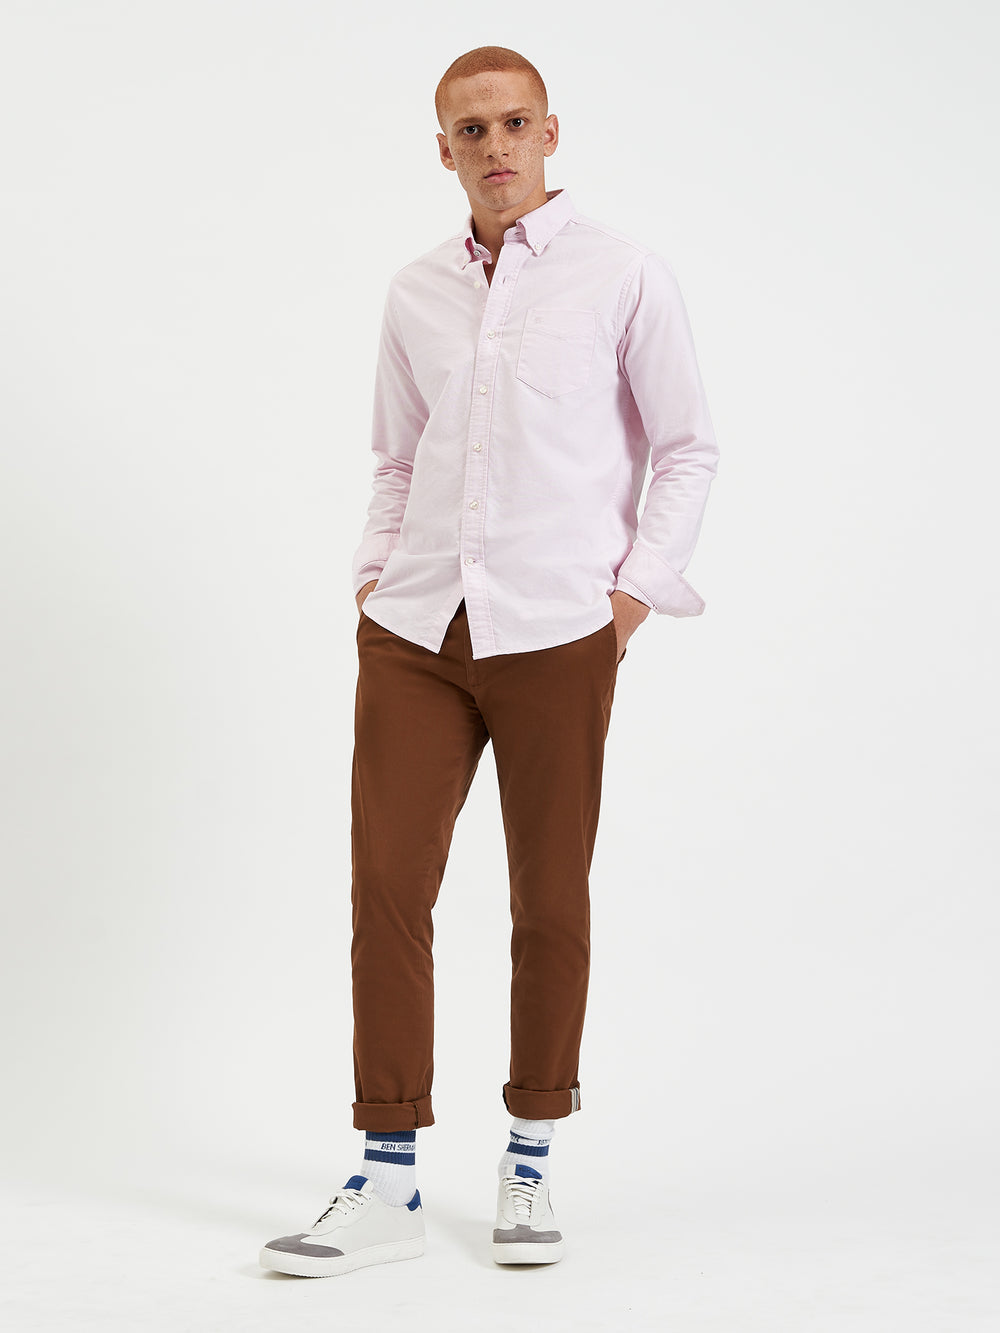 Ben Sherman, Brighton Oxford Shirt, Men's Pink Oxford Shirt, commuter button down cotton shirt, pink, front 